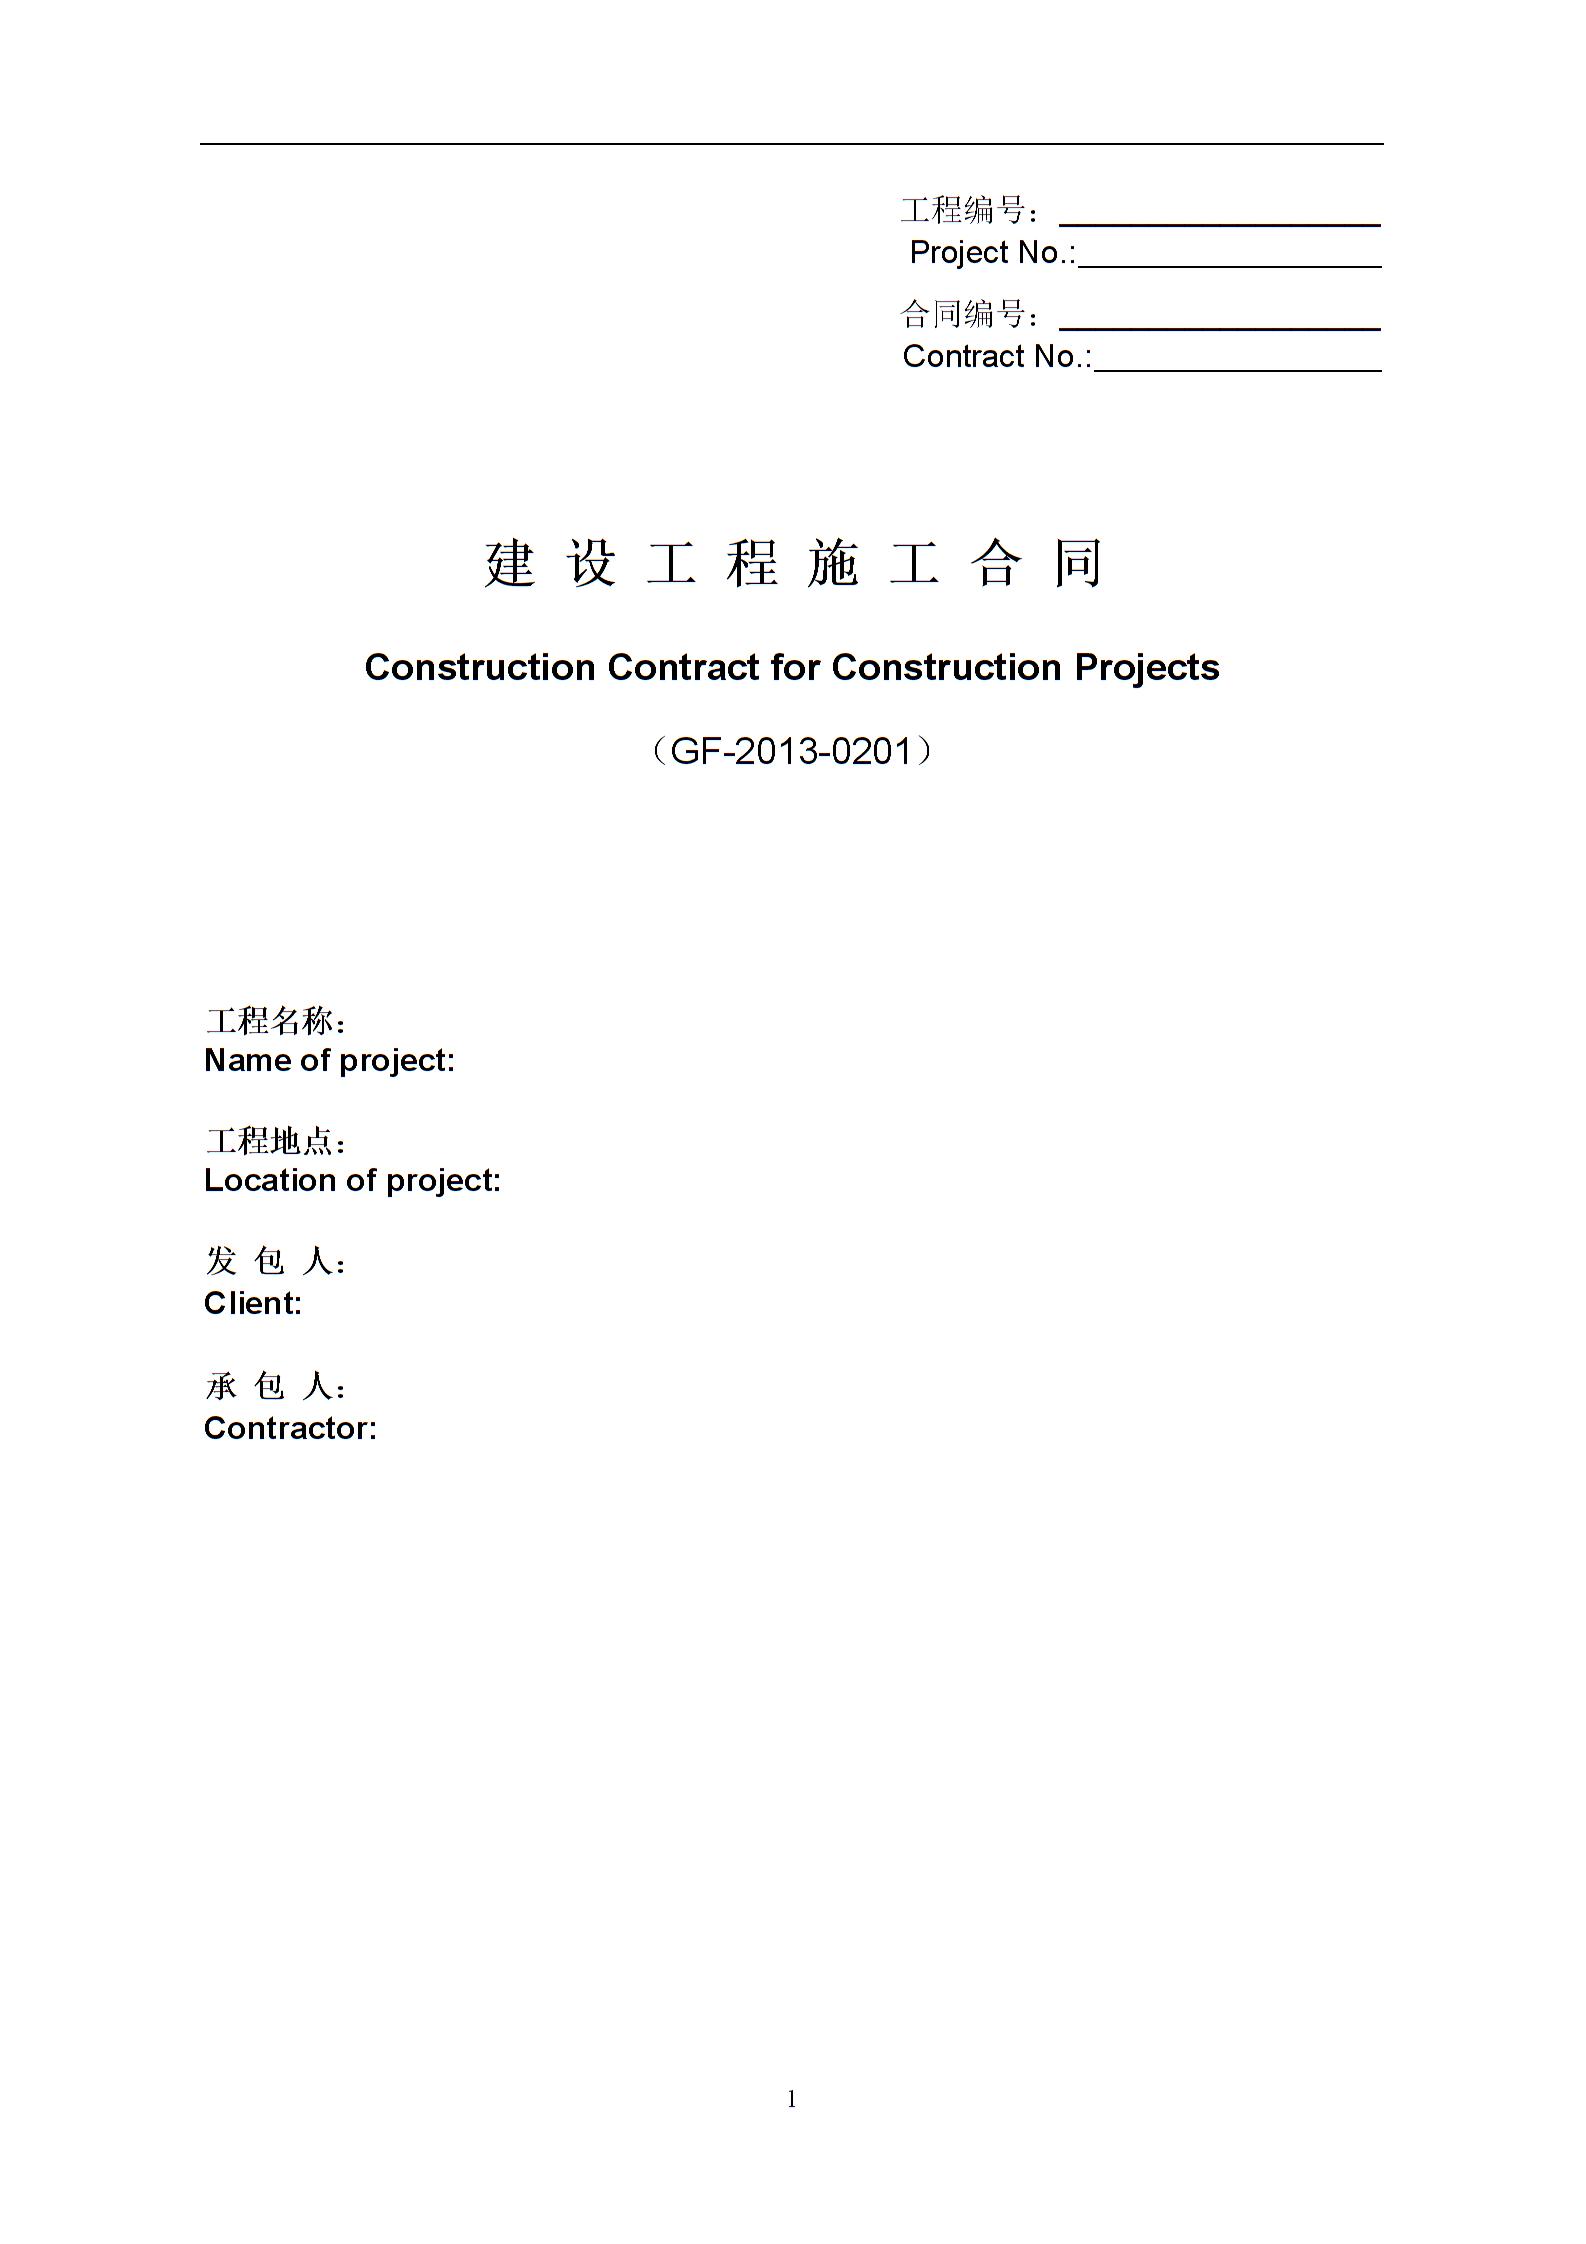 建设工程施工合同(GF-2013-0201)中英文翻译件范本